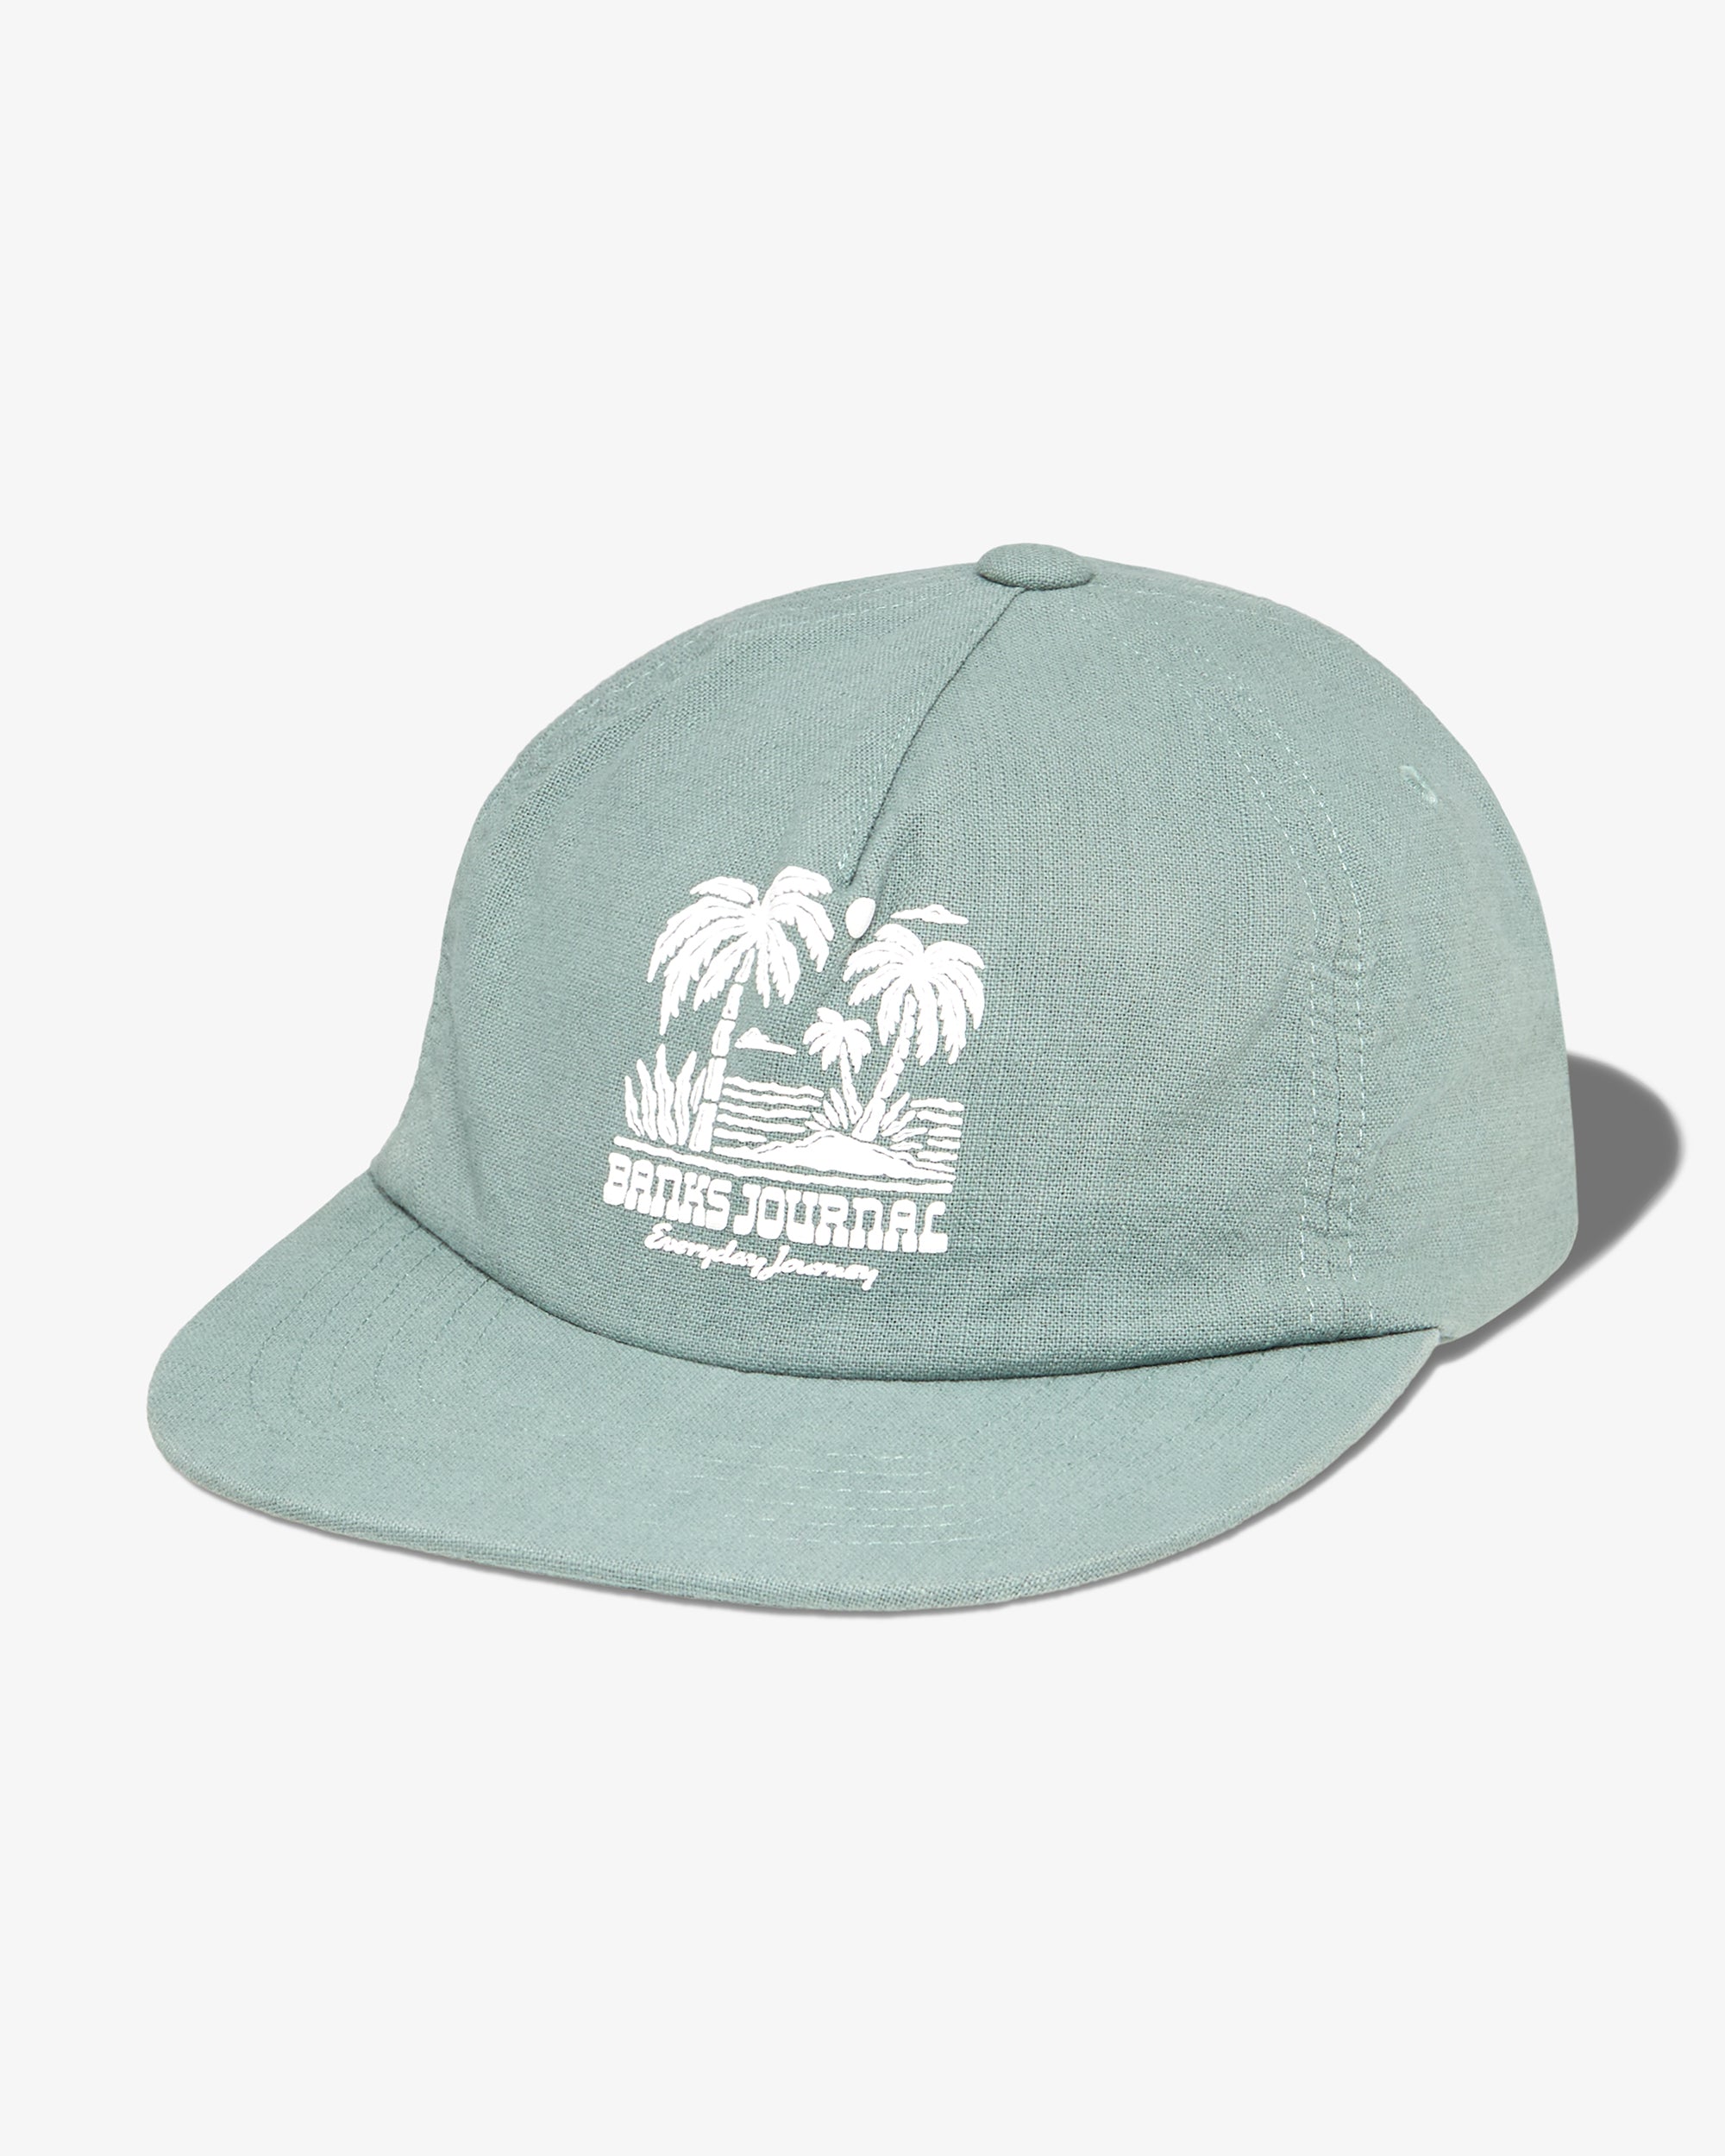 Seaside Hat